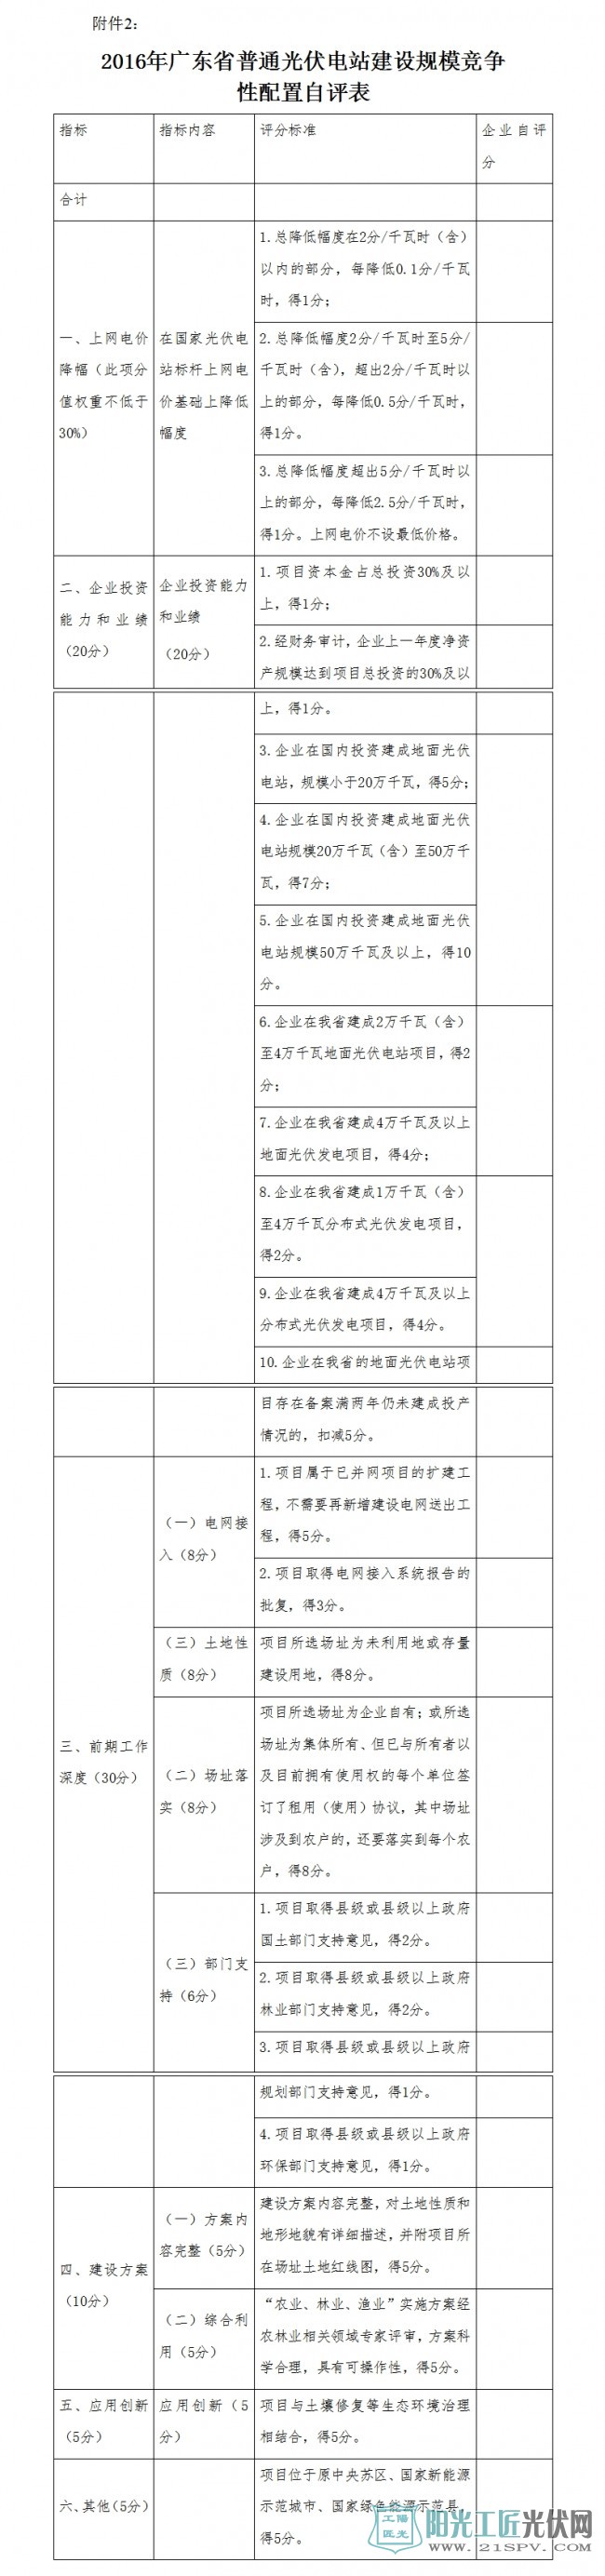 2016年广东省普通光伏电站建设规模竞争性配置自评表